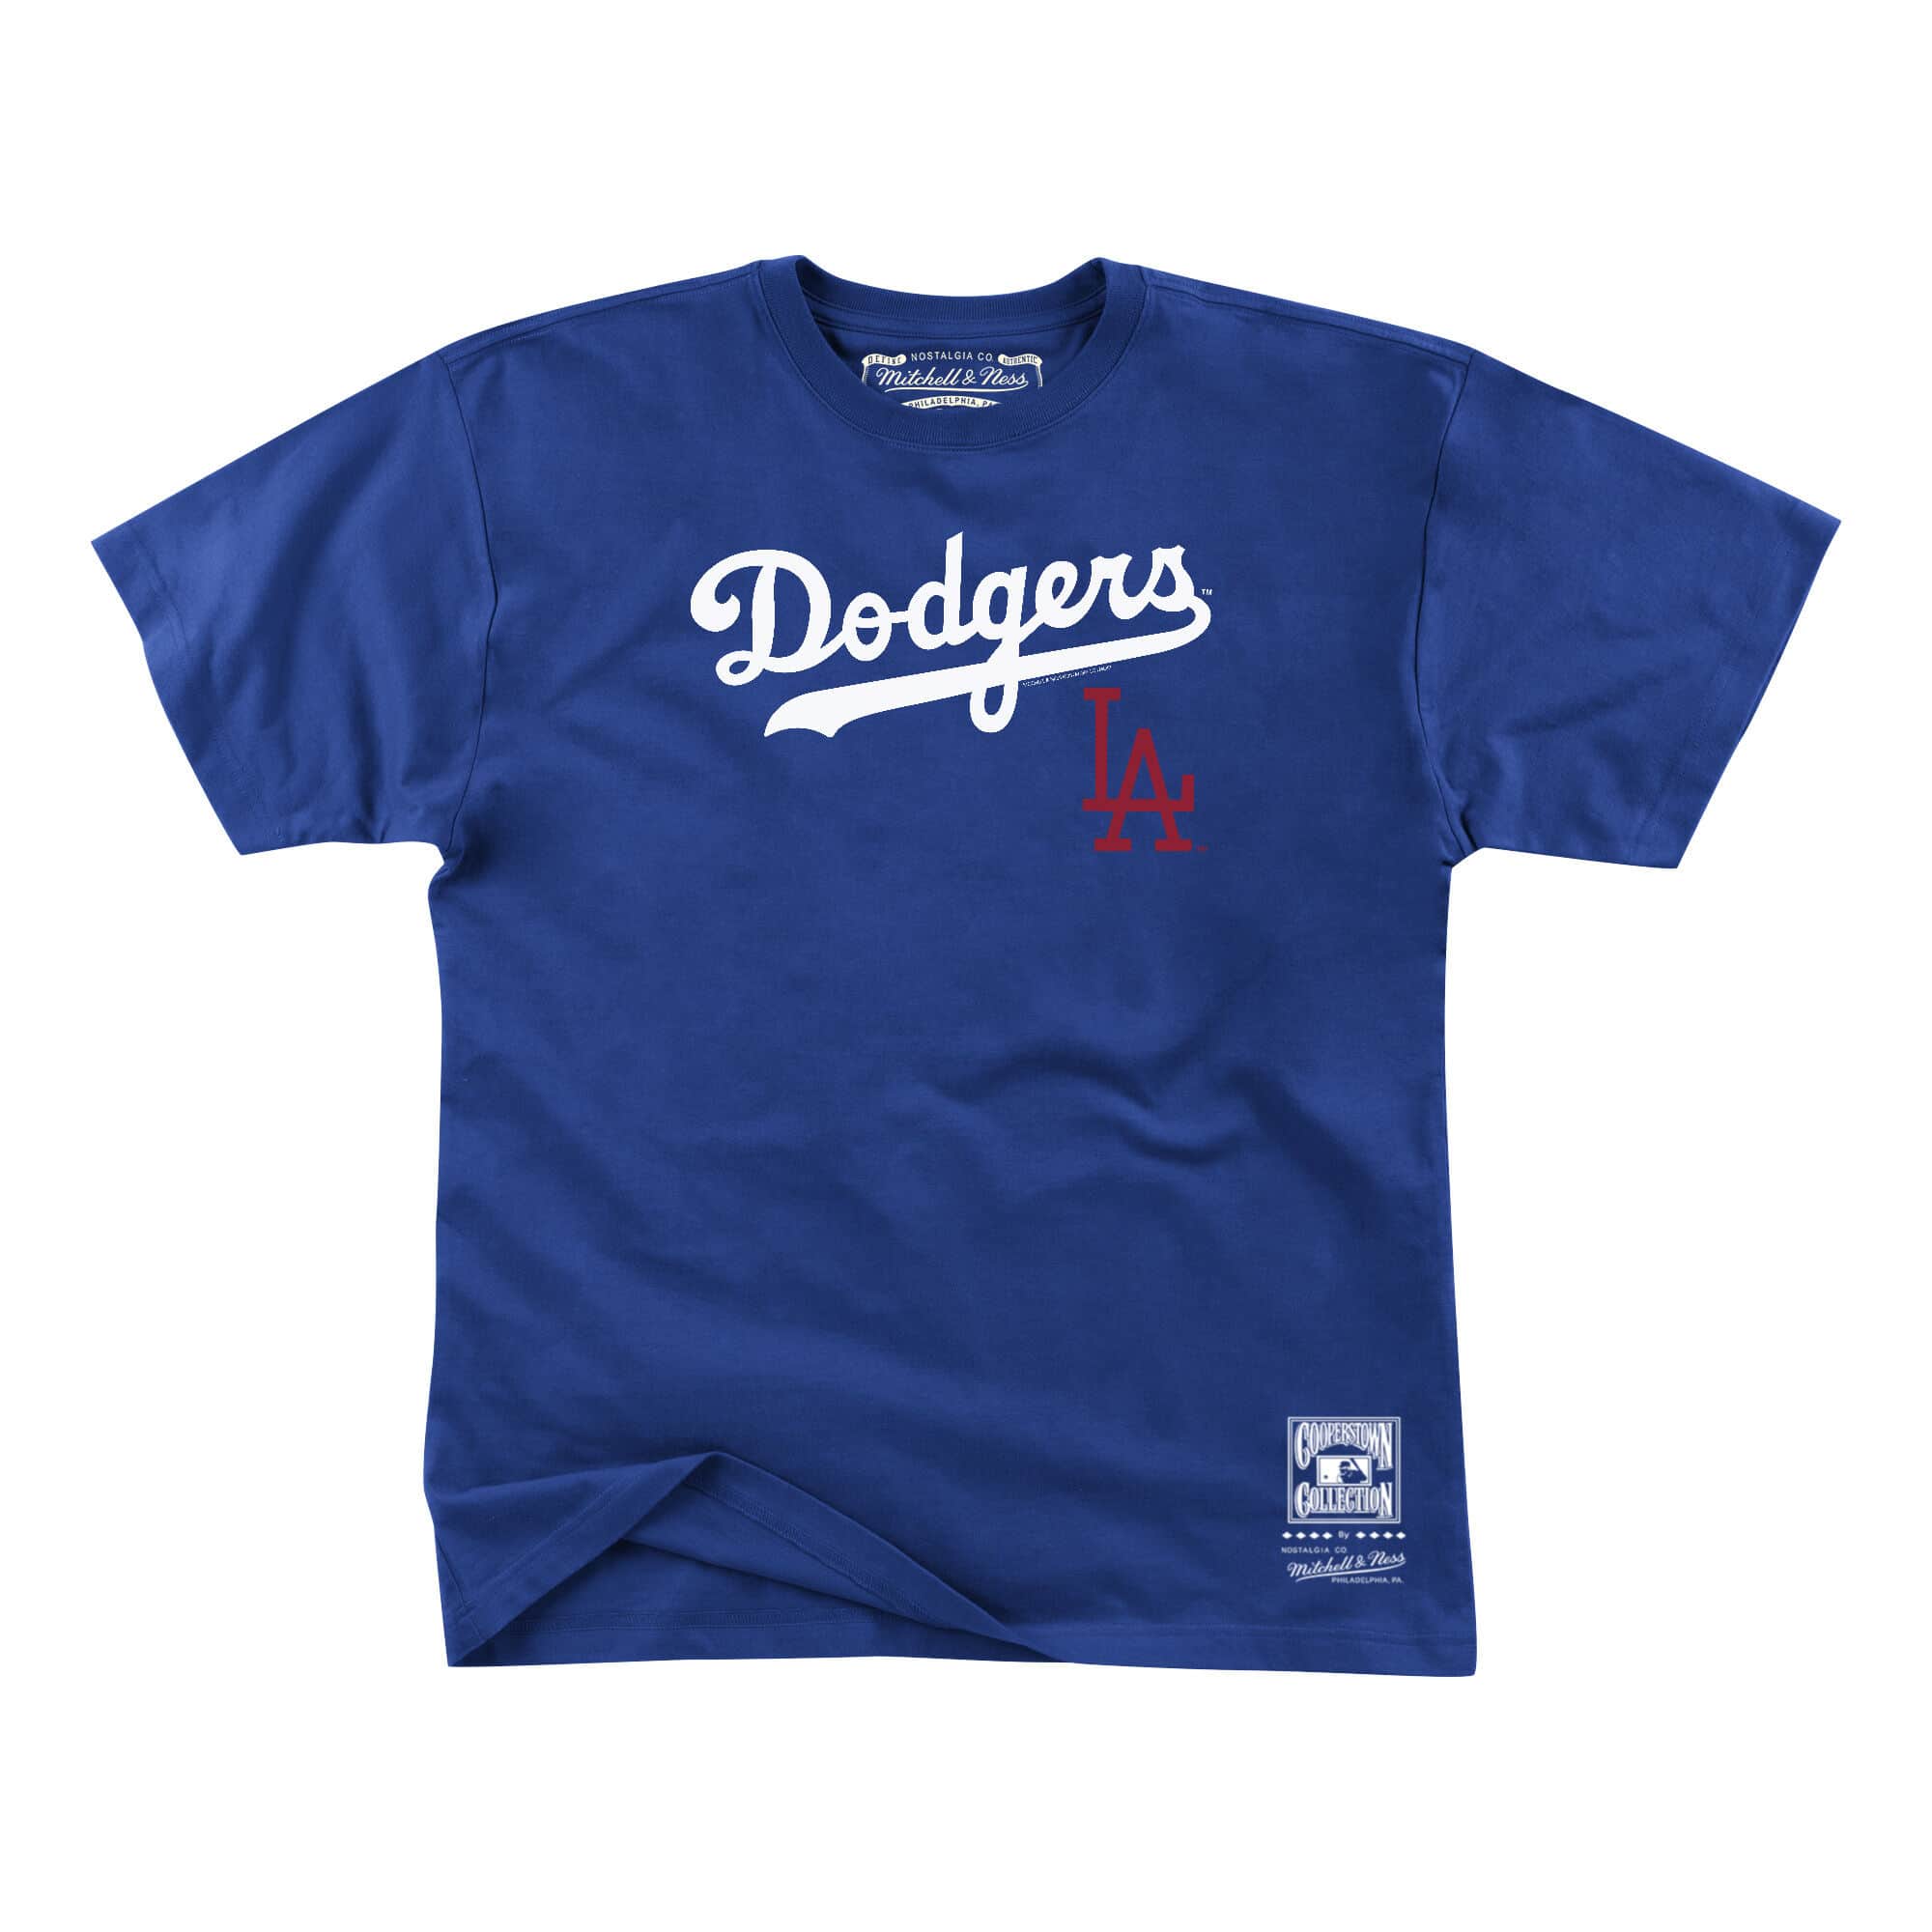 Official Dodgers Tshirt: Genuine Merchandise Men’s Large, Blue